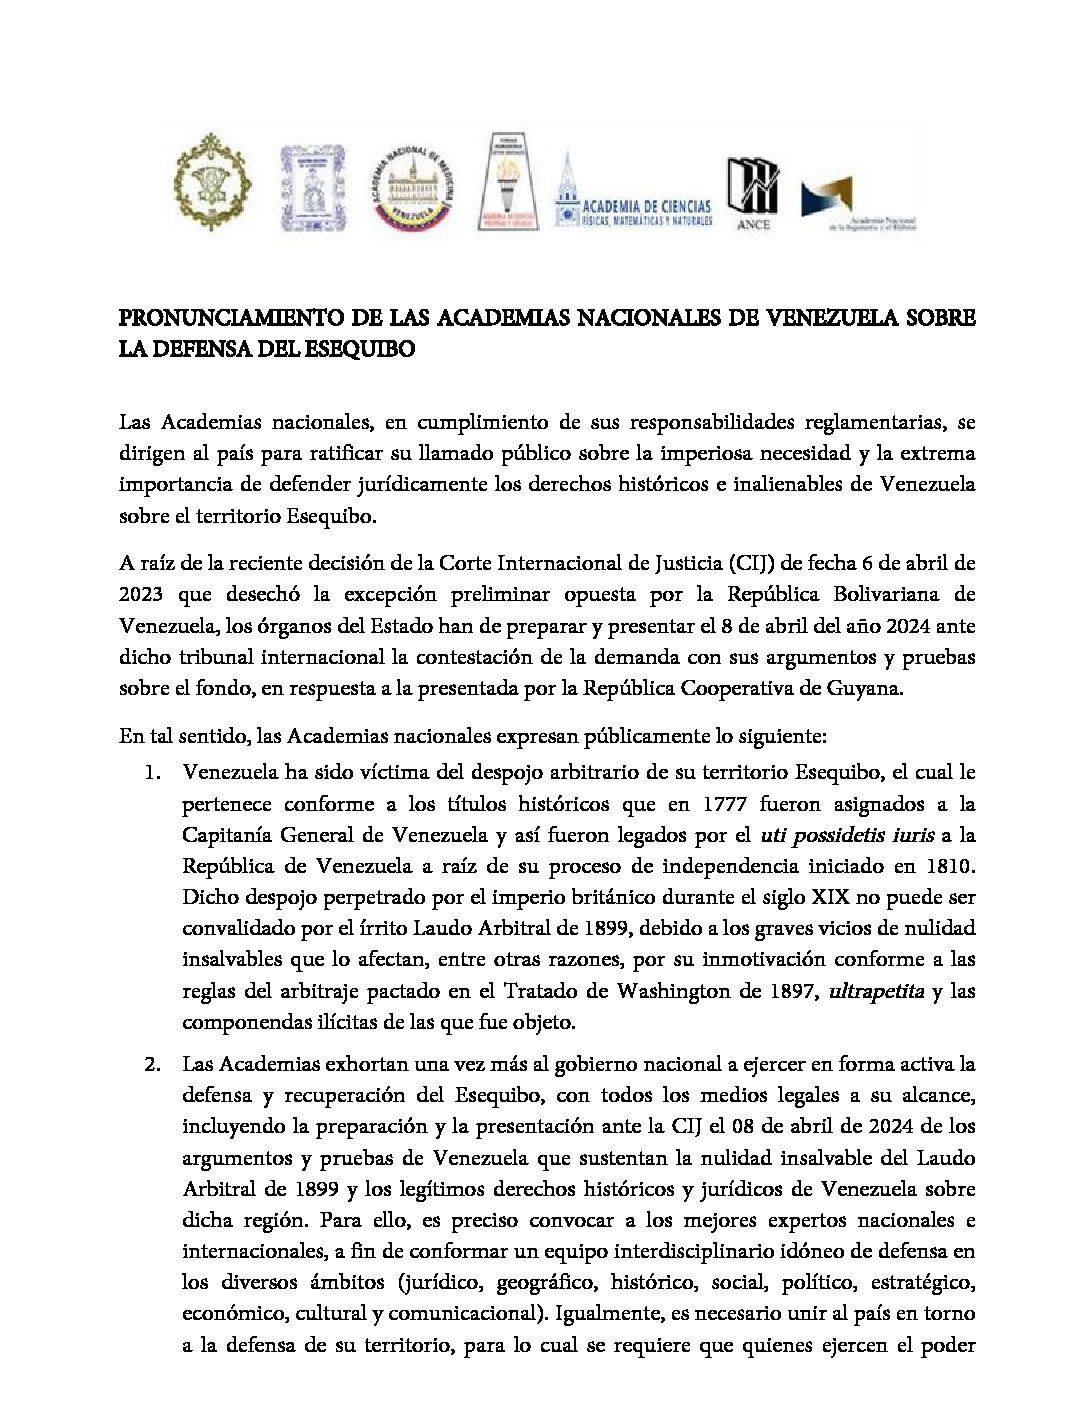 Pronunciamiento de las Academias nacionales de Venezuela sobre la defensa del Esequibo